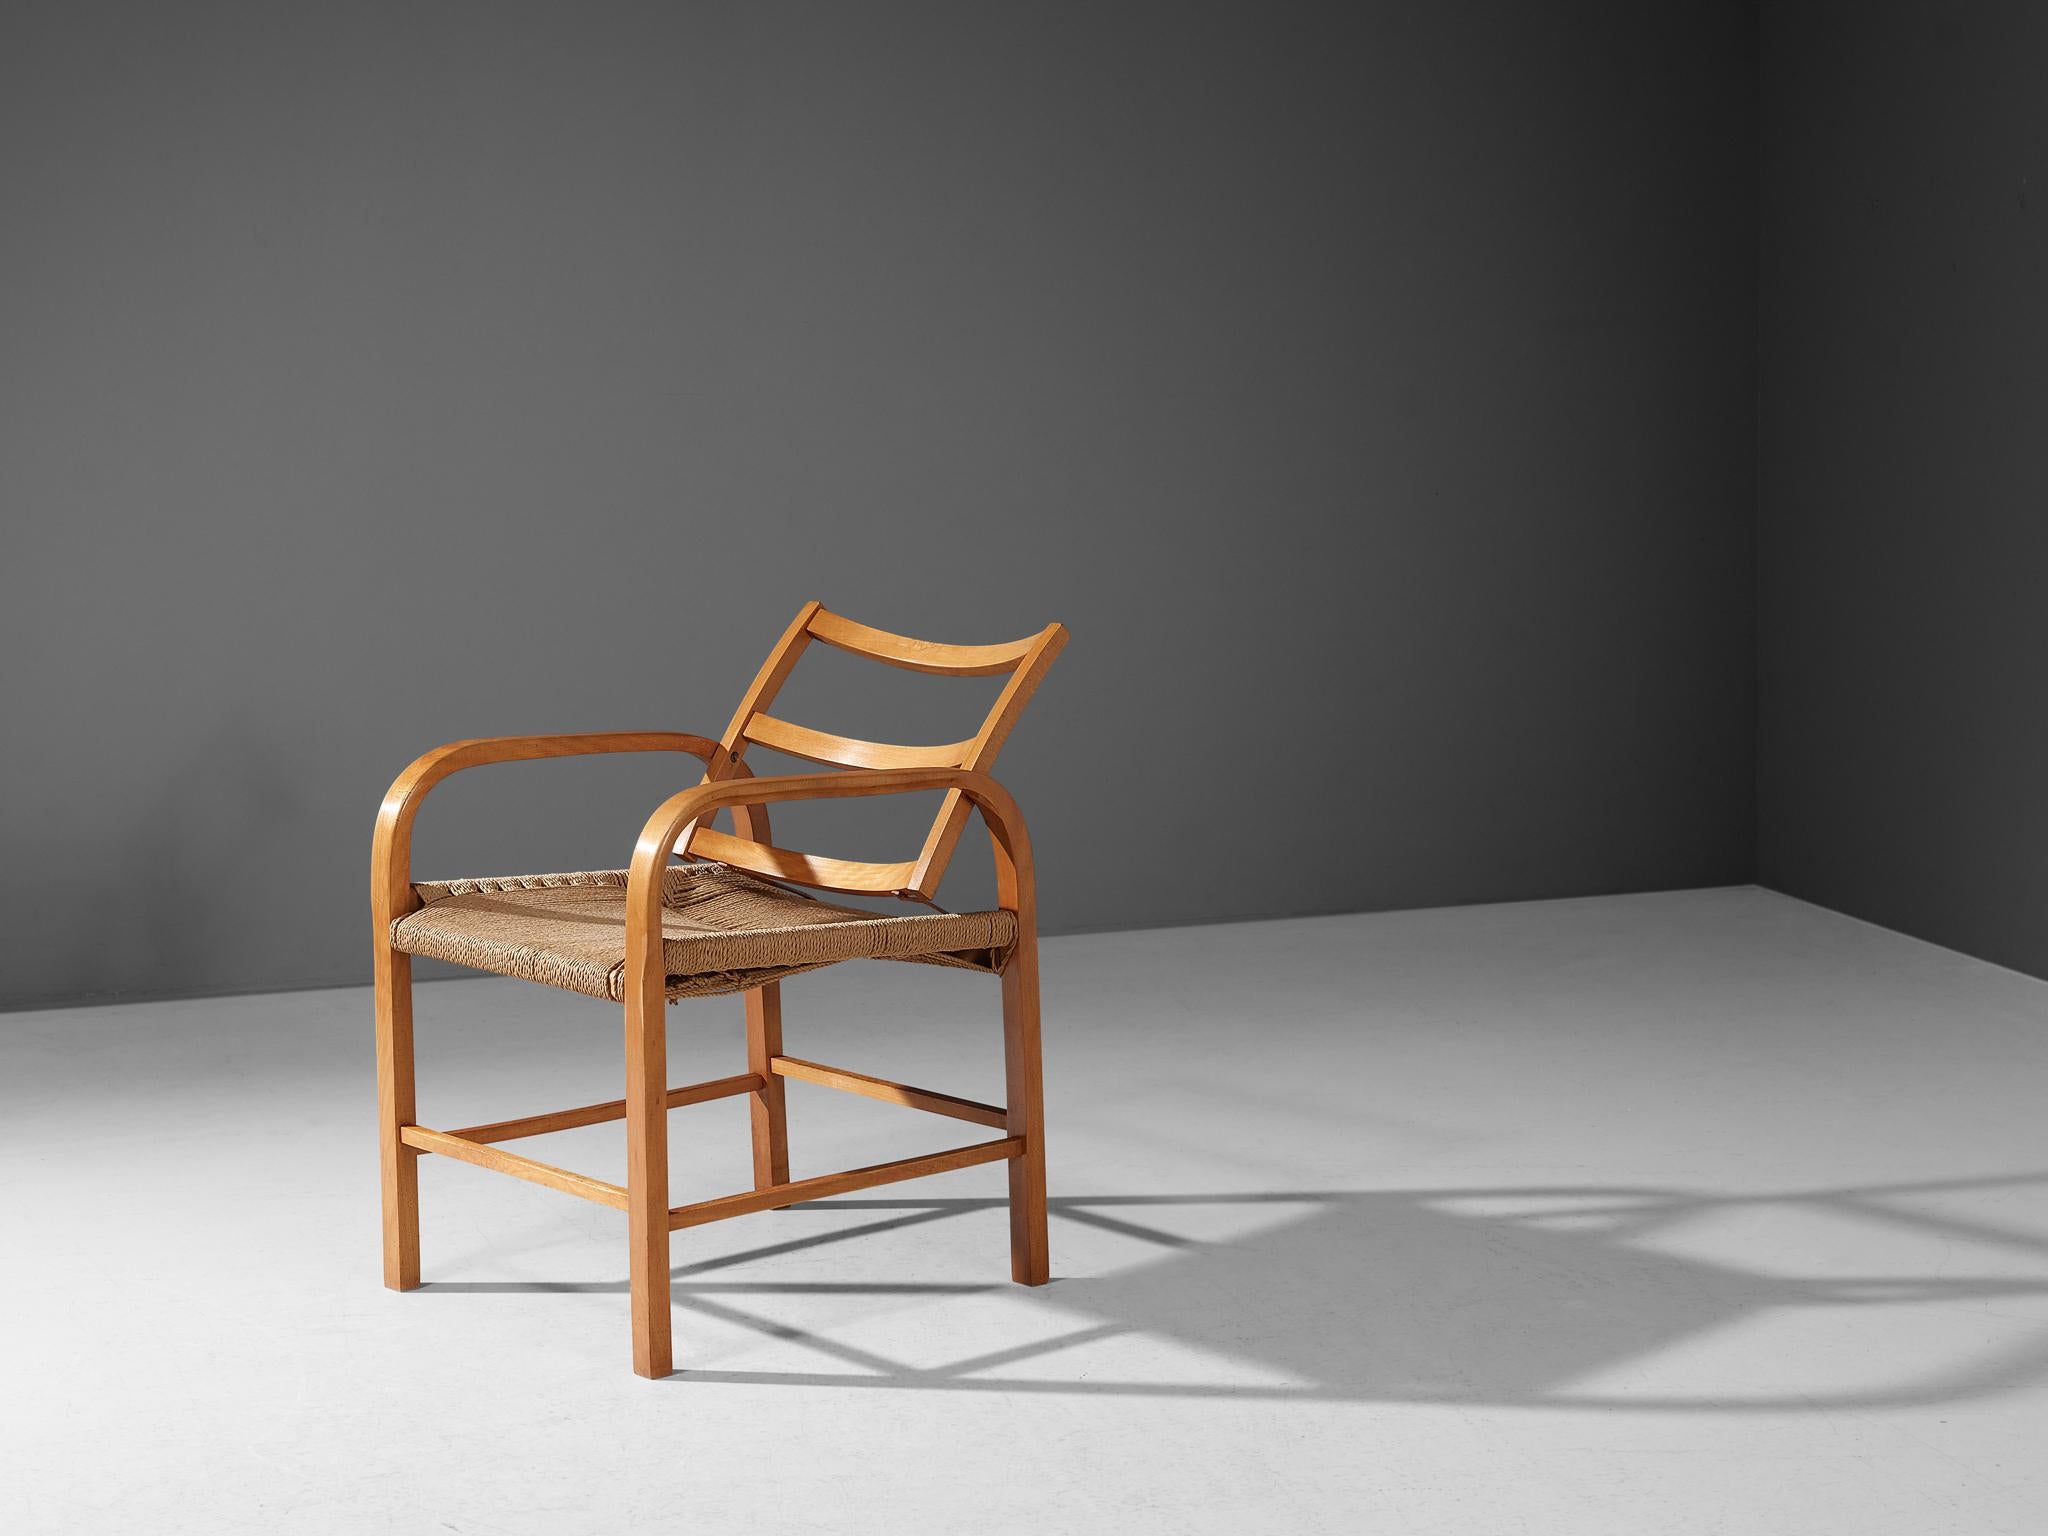 Magnus Beeche pour l'ébéniste Clausen, fauteuil, hêtre, algues tissées, cuir, Danemark, circa. 1933

Ce fauteuil a été conçu par l'architecte danois Magnus Læssøe Stephensen (1903-1984). Le designer s'est concentré sur la création d'une chaise